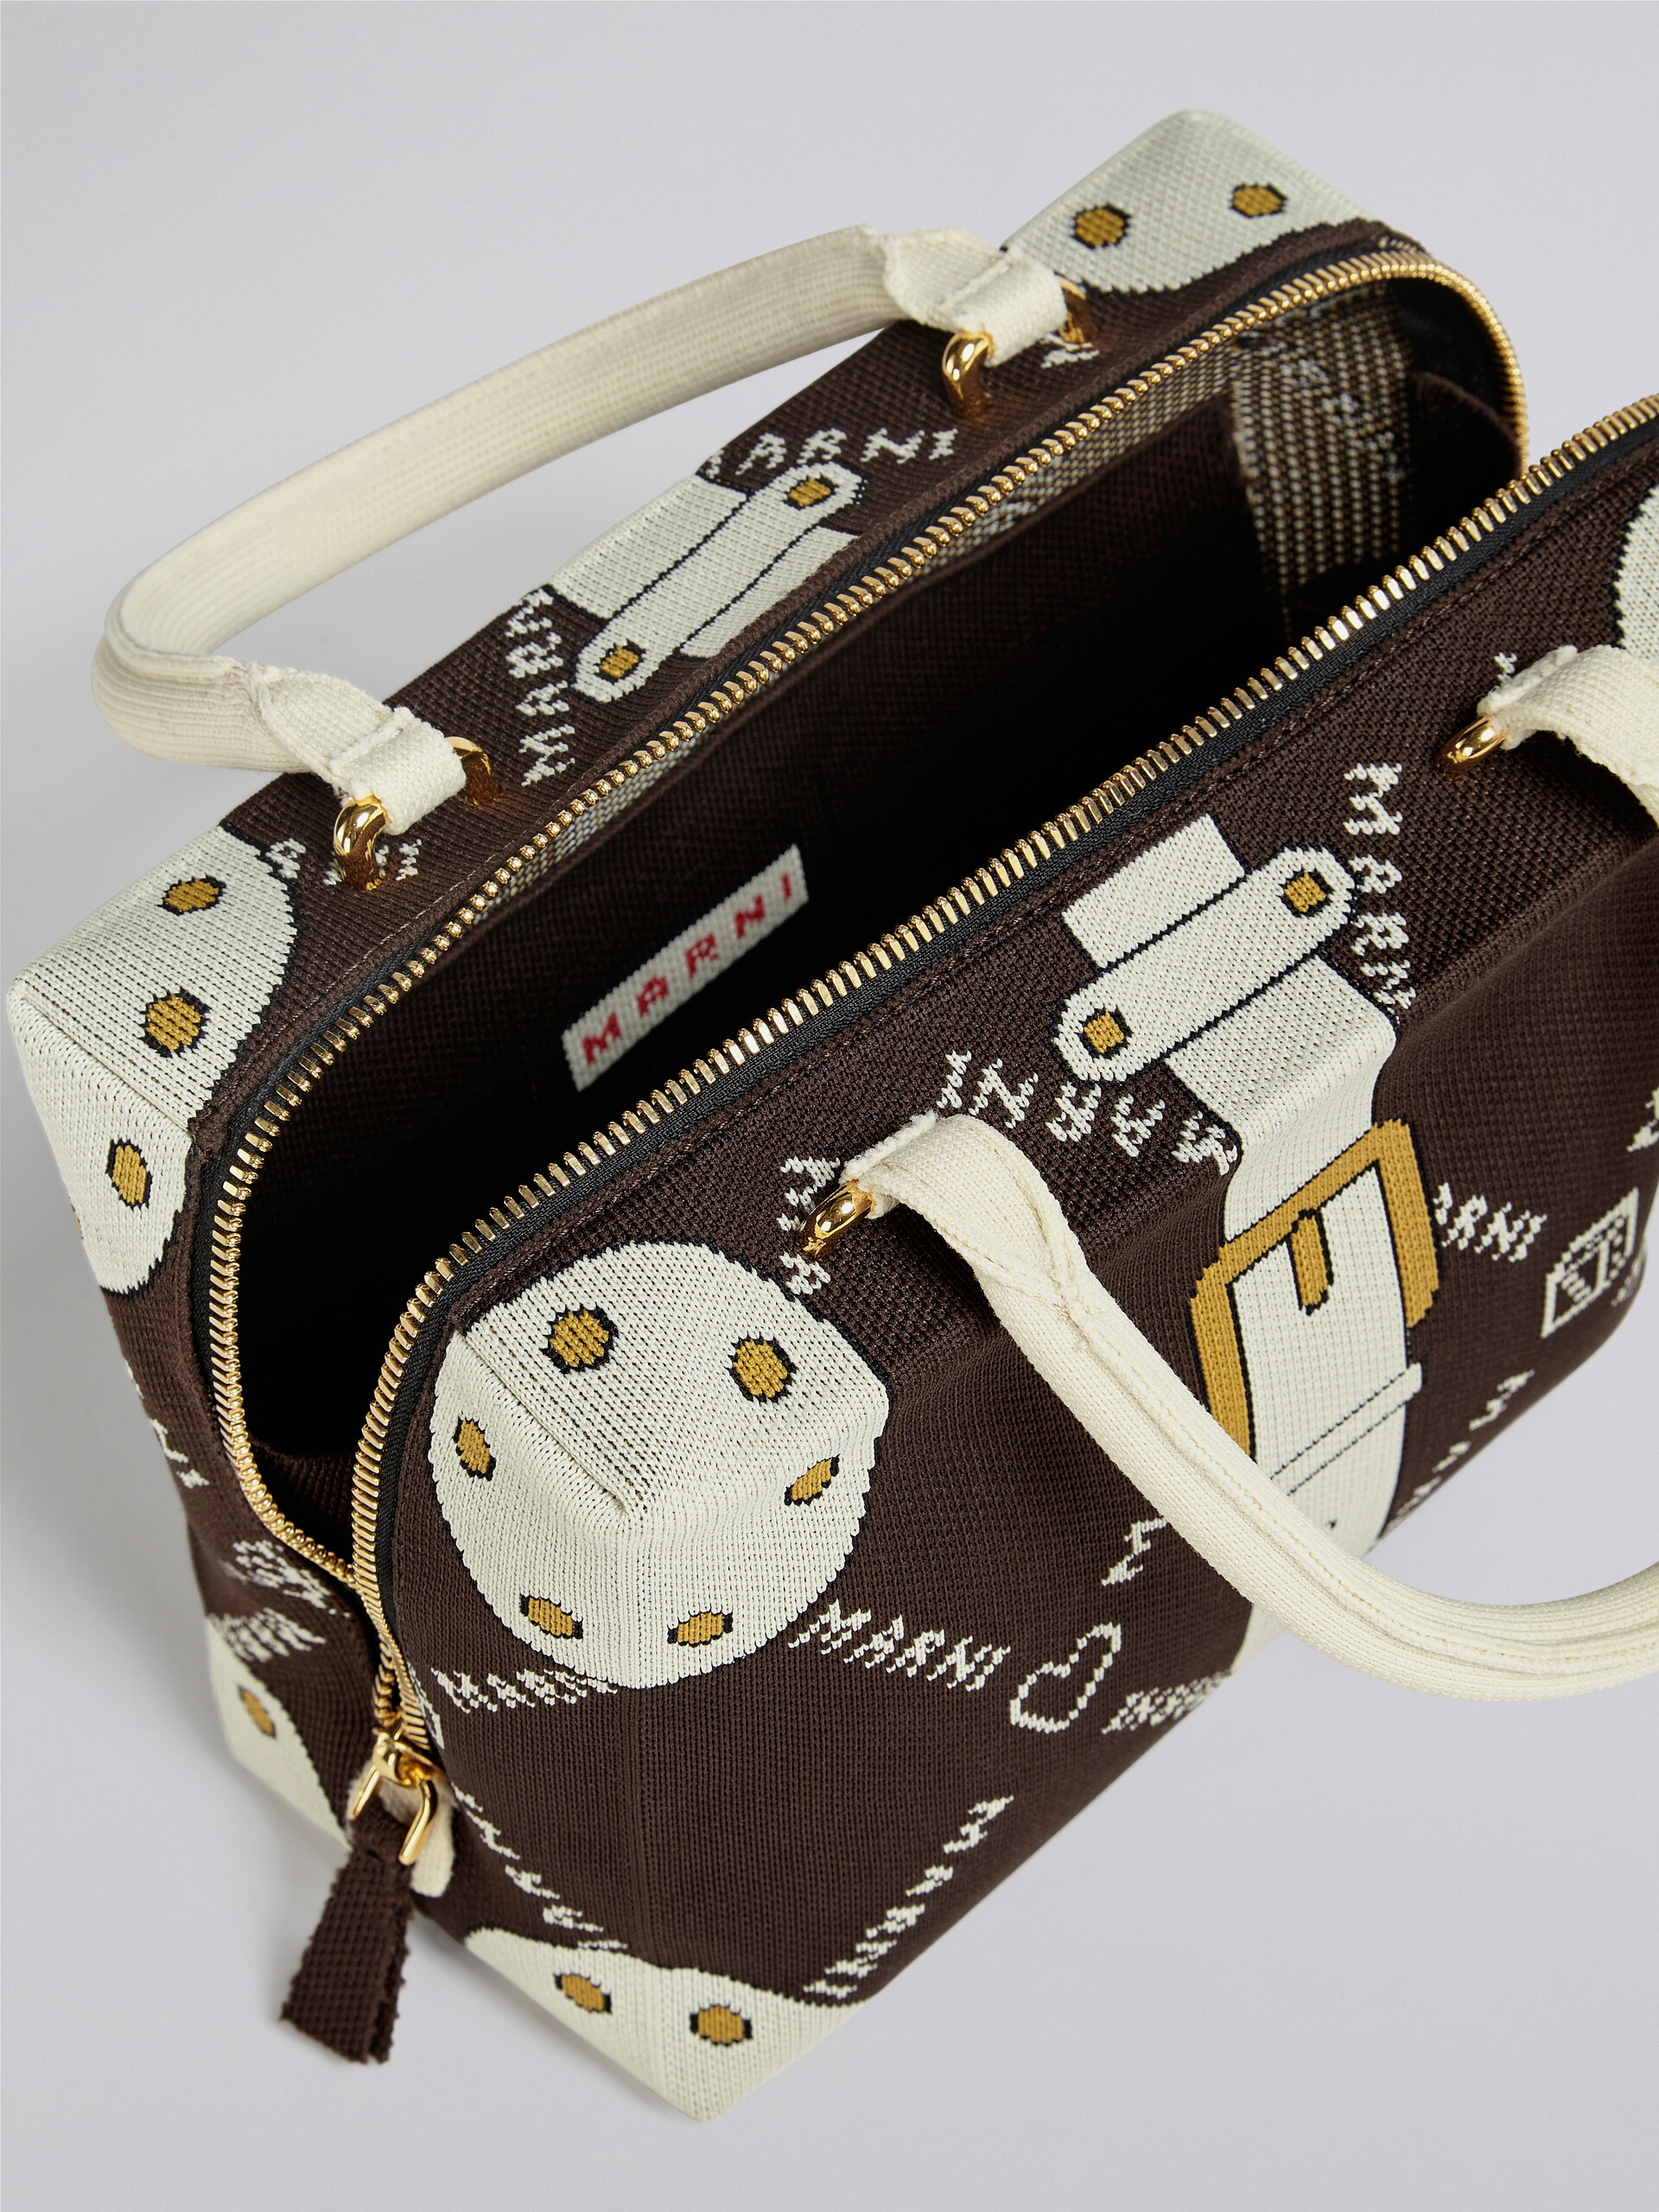 CUBIC bag in brown Marnigram trompe-l'œil jacquard - Handbag - Image 4